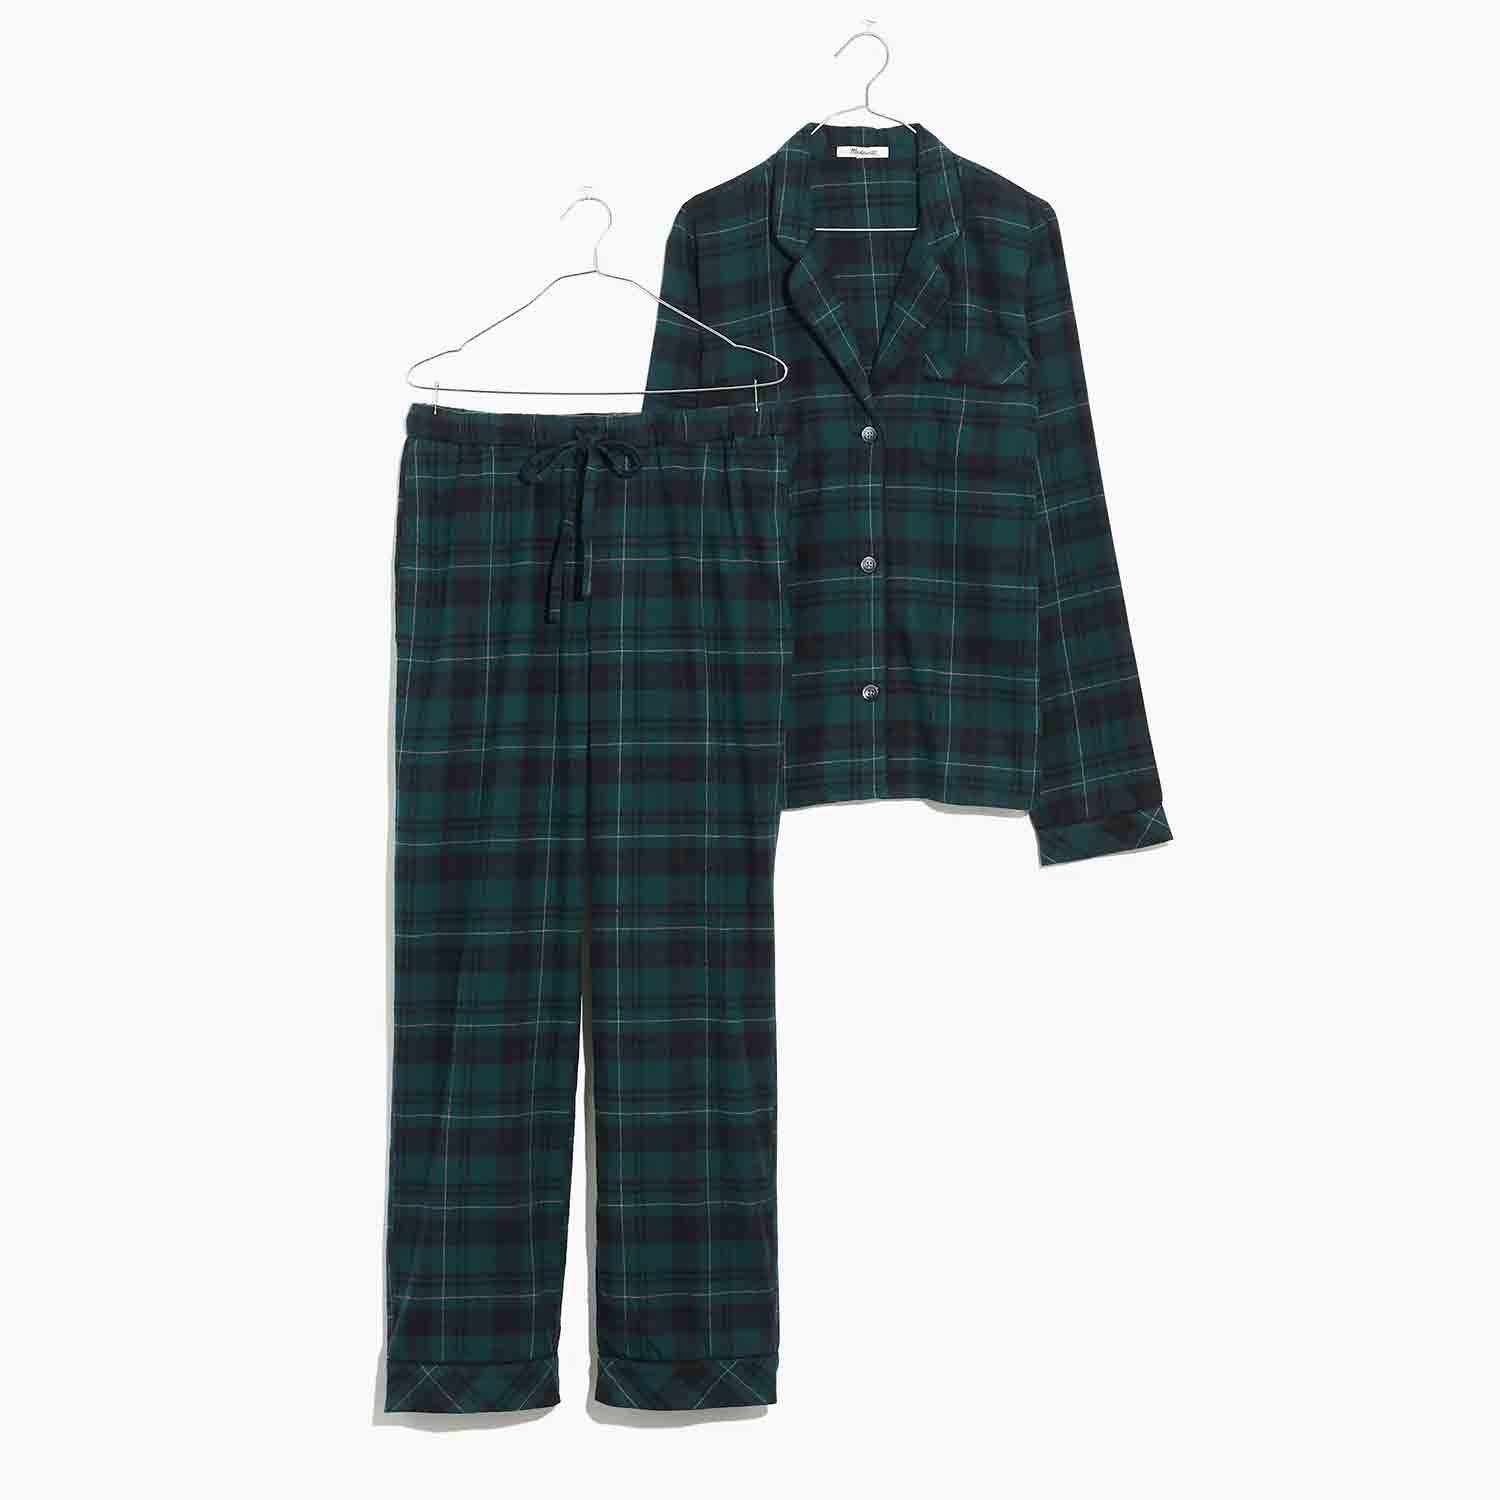 Diese kuscheligen Flanell-Pyjamas sind bei Madewell um 40 % reduziert – aber nur bis heute Abend